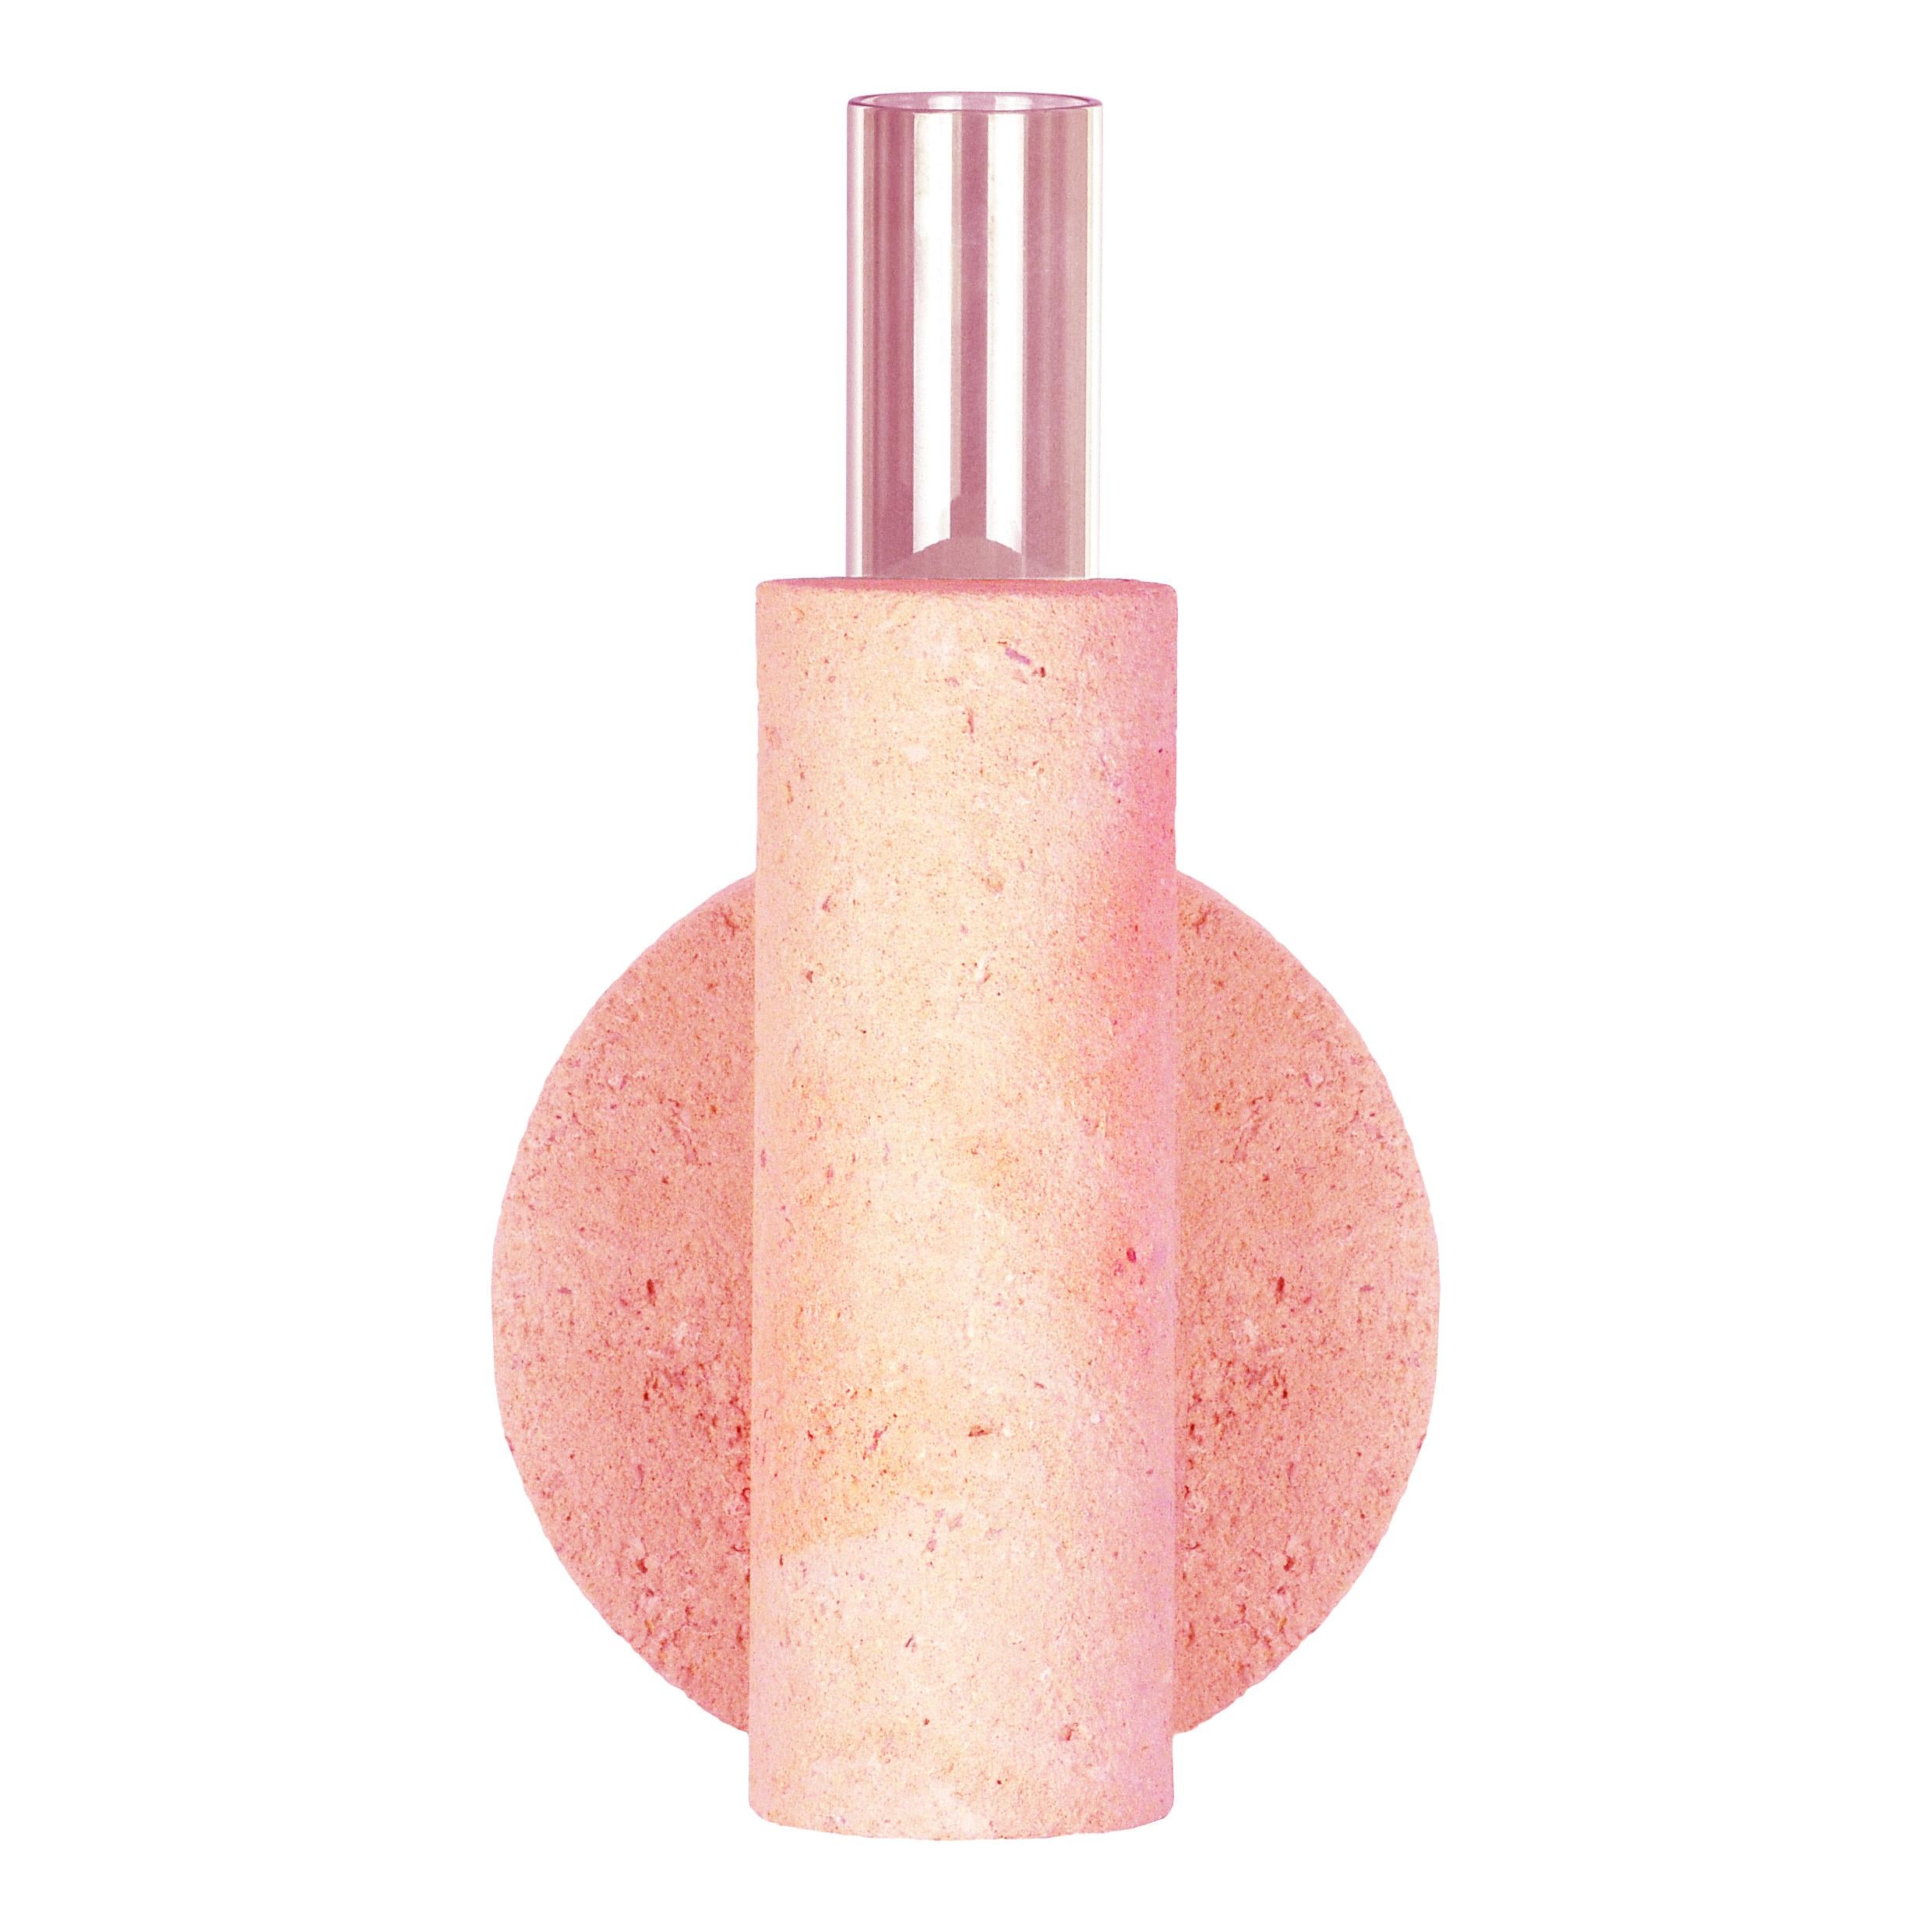 Italian Pink-Pink Cochlea Della Metamorfosi 2 Soils Edition Vase by Coki Barbieri